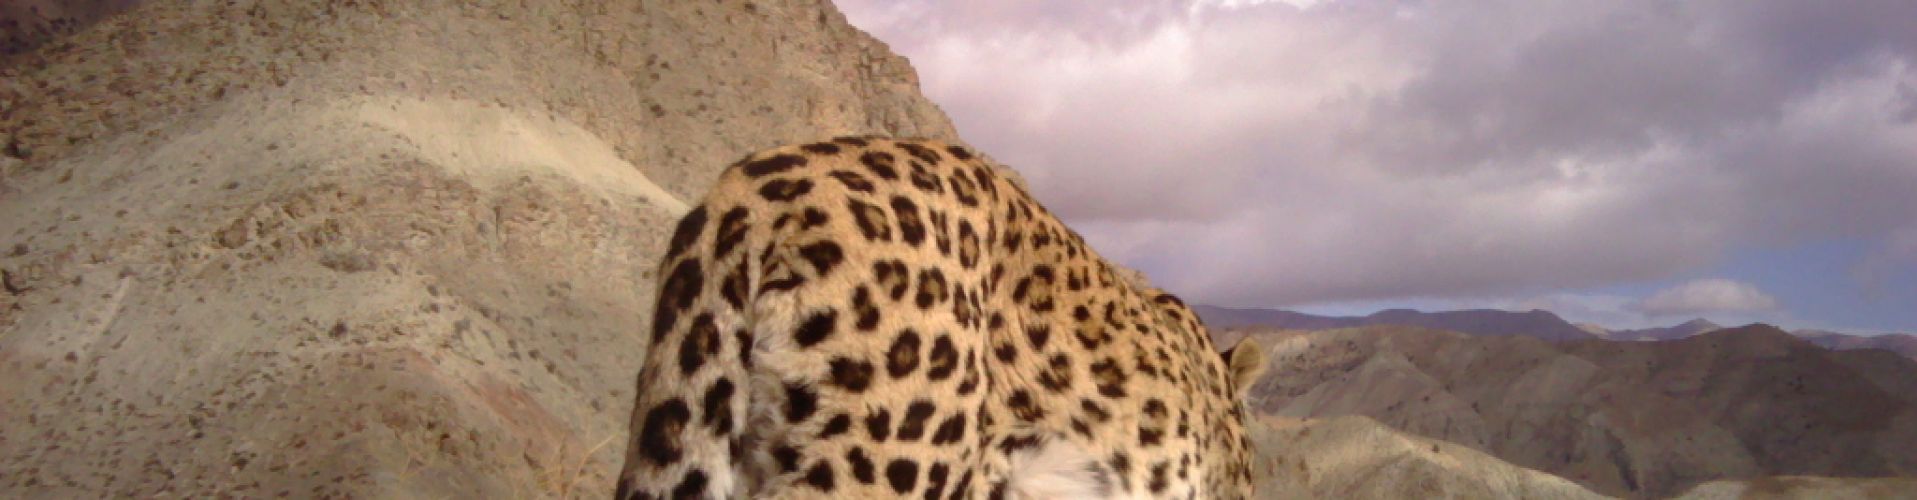 persischerleopard1